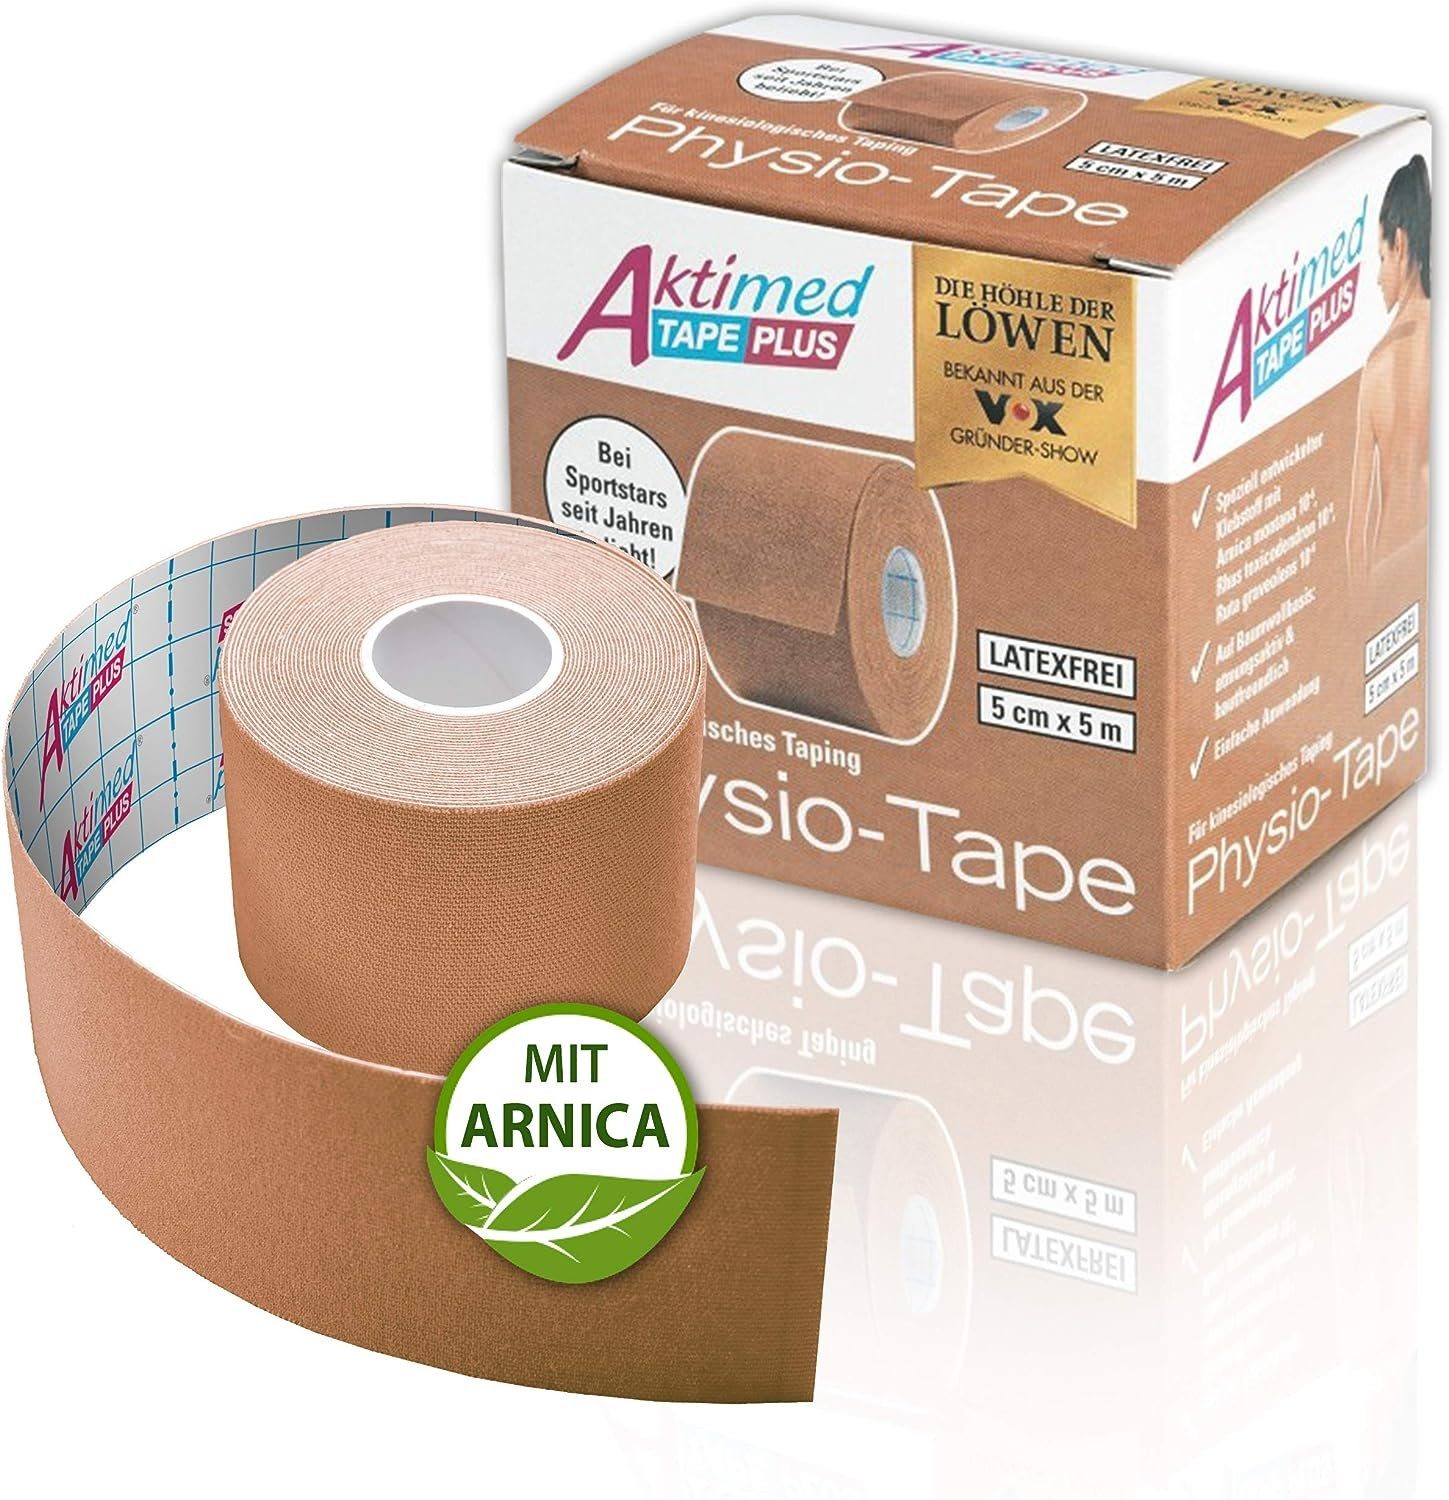 Aktimed Kinesiologie-Tape Tape PLUS mit Arnica, farblich sortiert